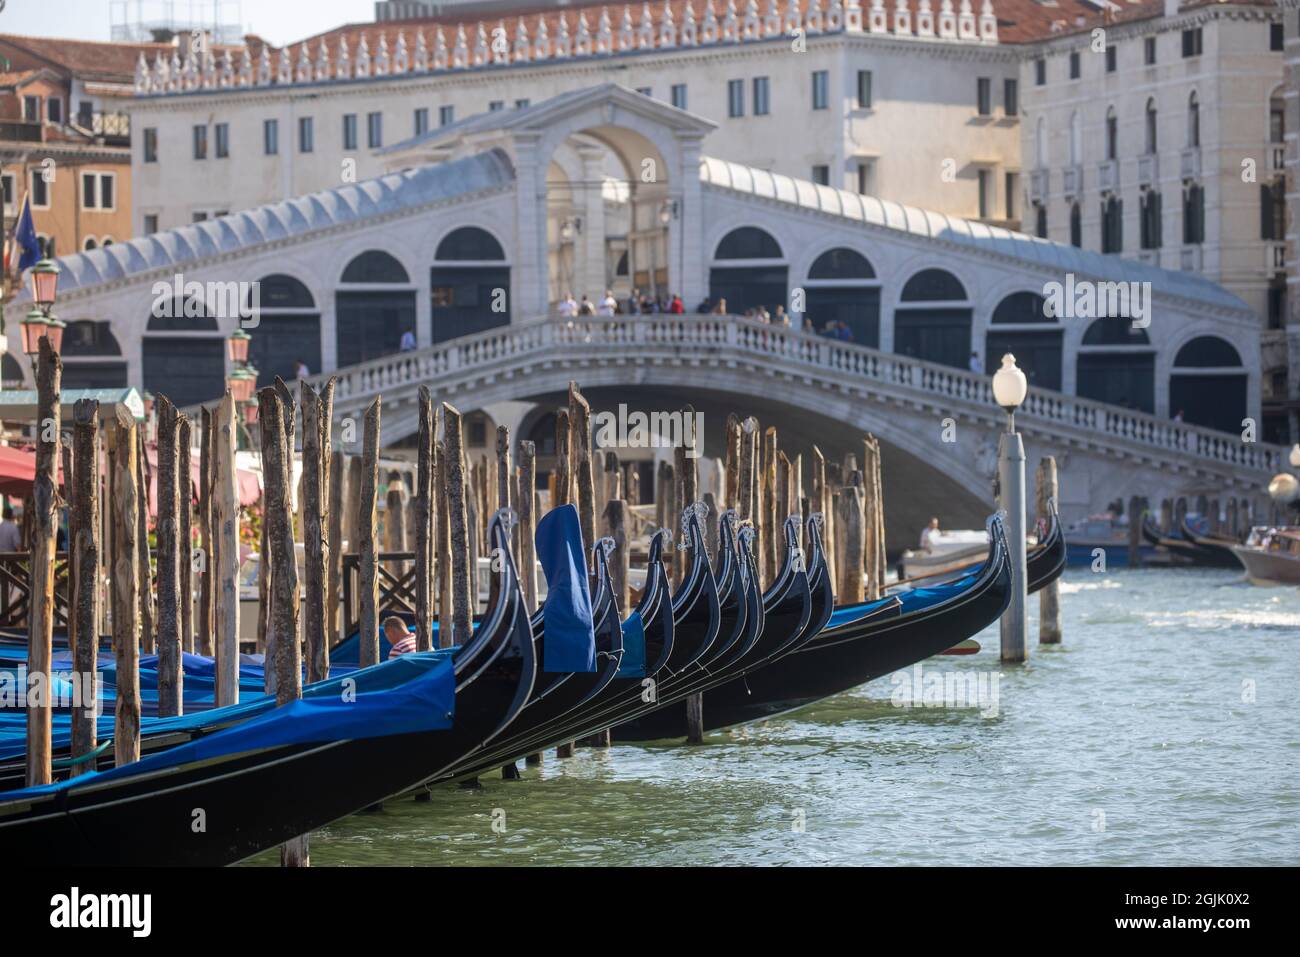 Gondeln auf dem Canal Grande in Venedig. Der Kanal führt vom Bahnhof Santa Lucia zur Lagune von San Marco. Touristen nehmen gerne Gondeln. Stockfoto